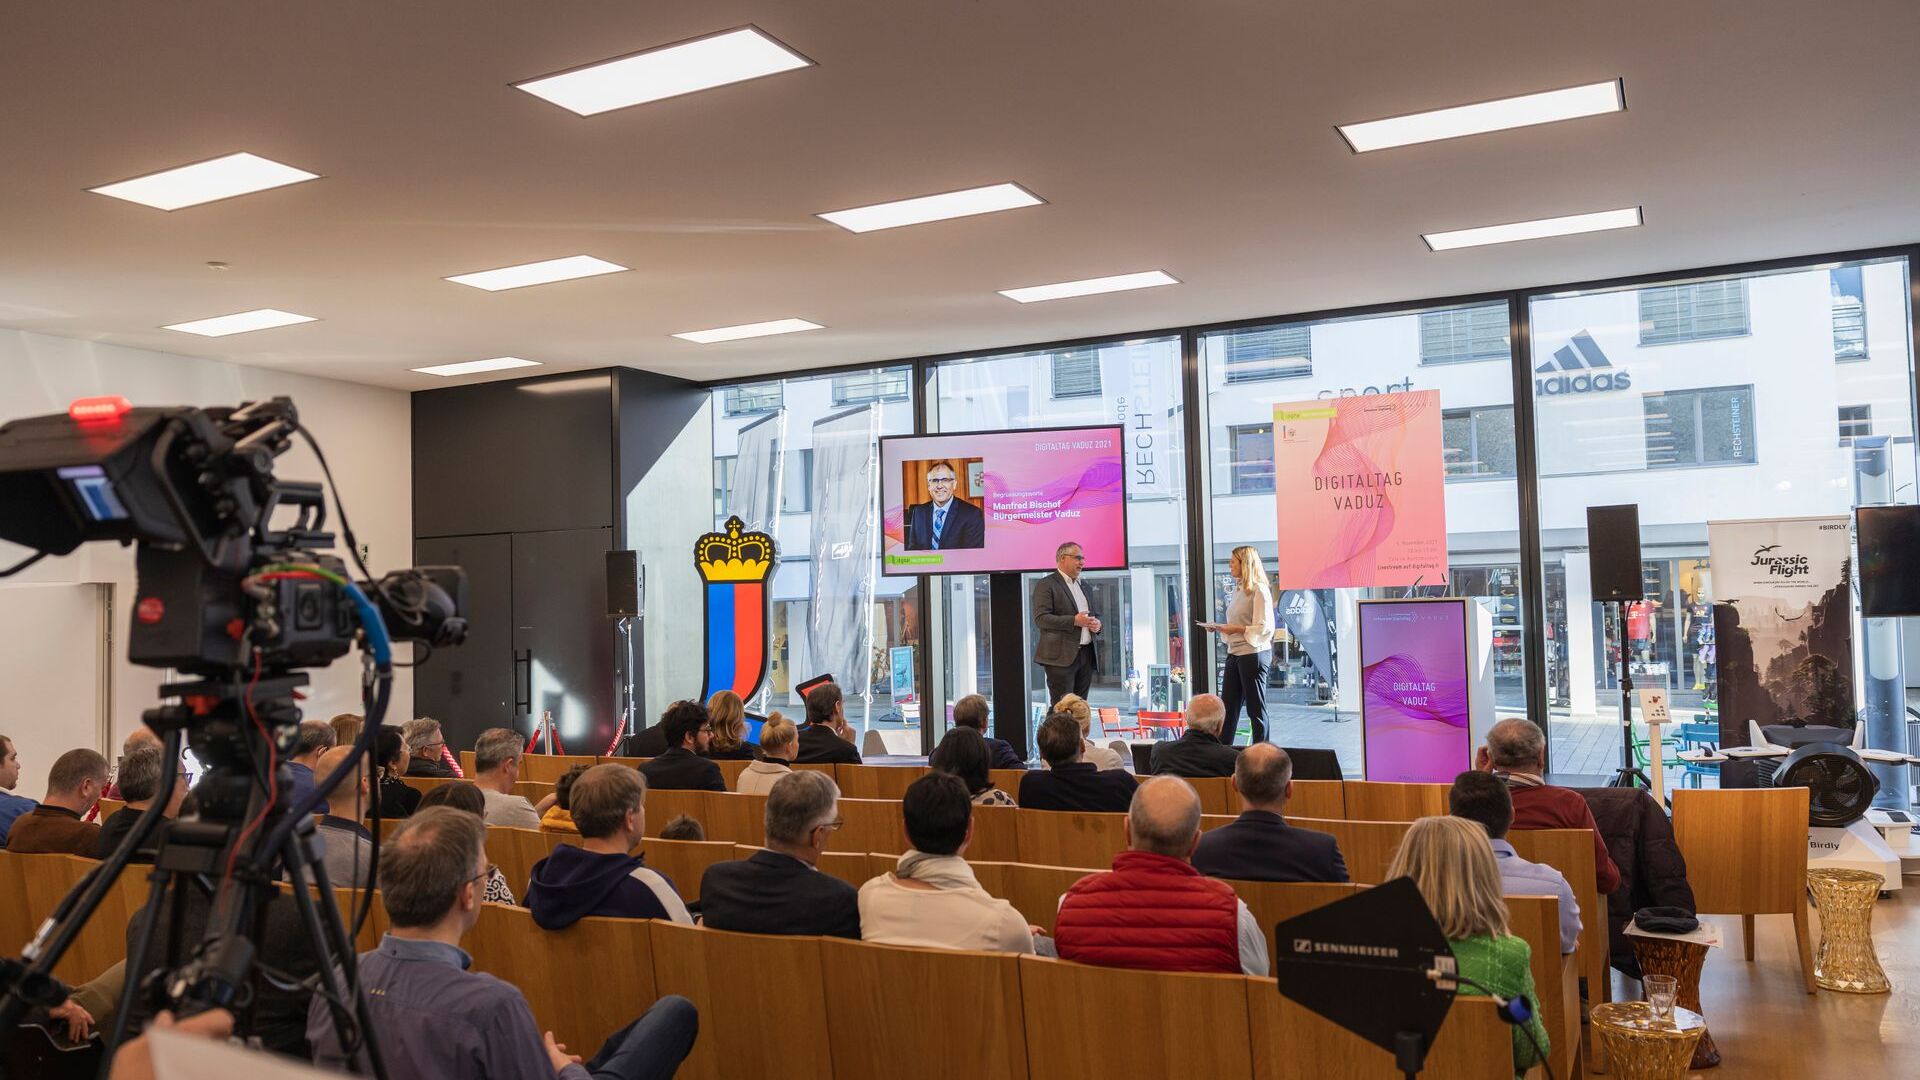 La “Digitaltag Vaduz”, accolta dal Kunstmuseum della capitale del Principato del Liechtenstein sabato 6 novembre 2021, ha suscitato l’entusiasmo di pubblico e relatori in analogia con la “Giornata Digitale Svizzera” del successivo giorno 10: l'intervento del Sindaco della capitale Manfred Bischof